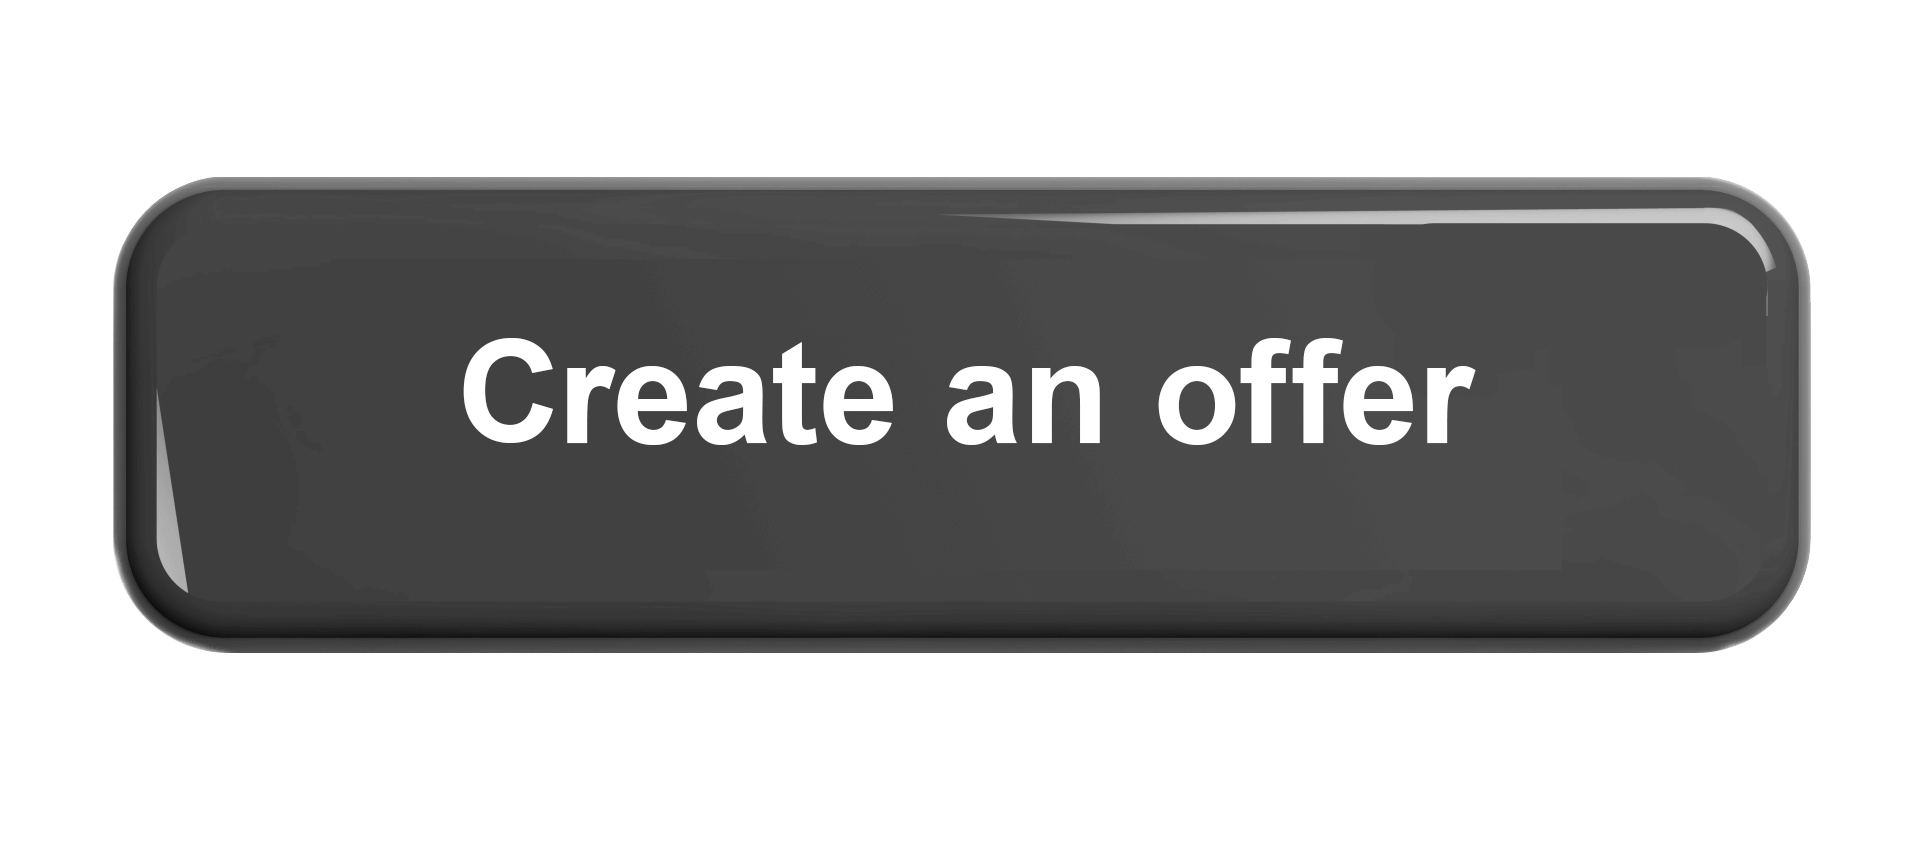 Create an offer